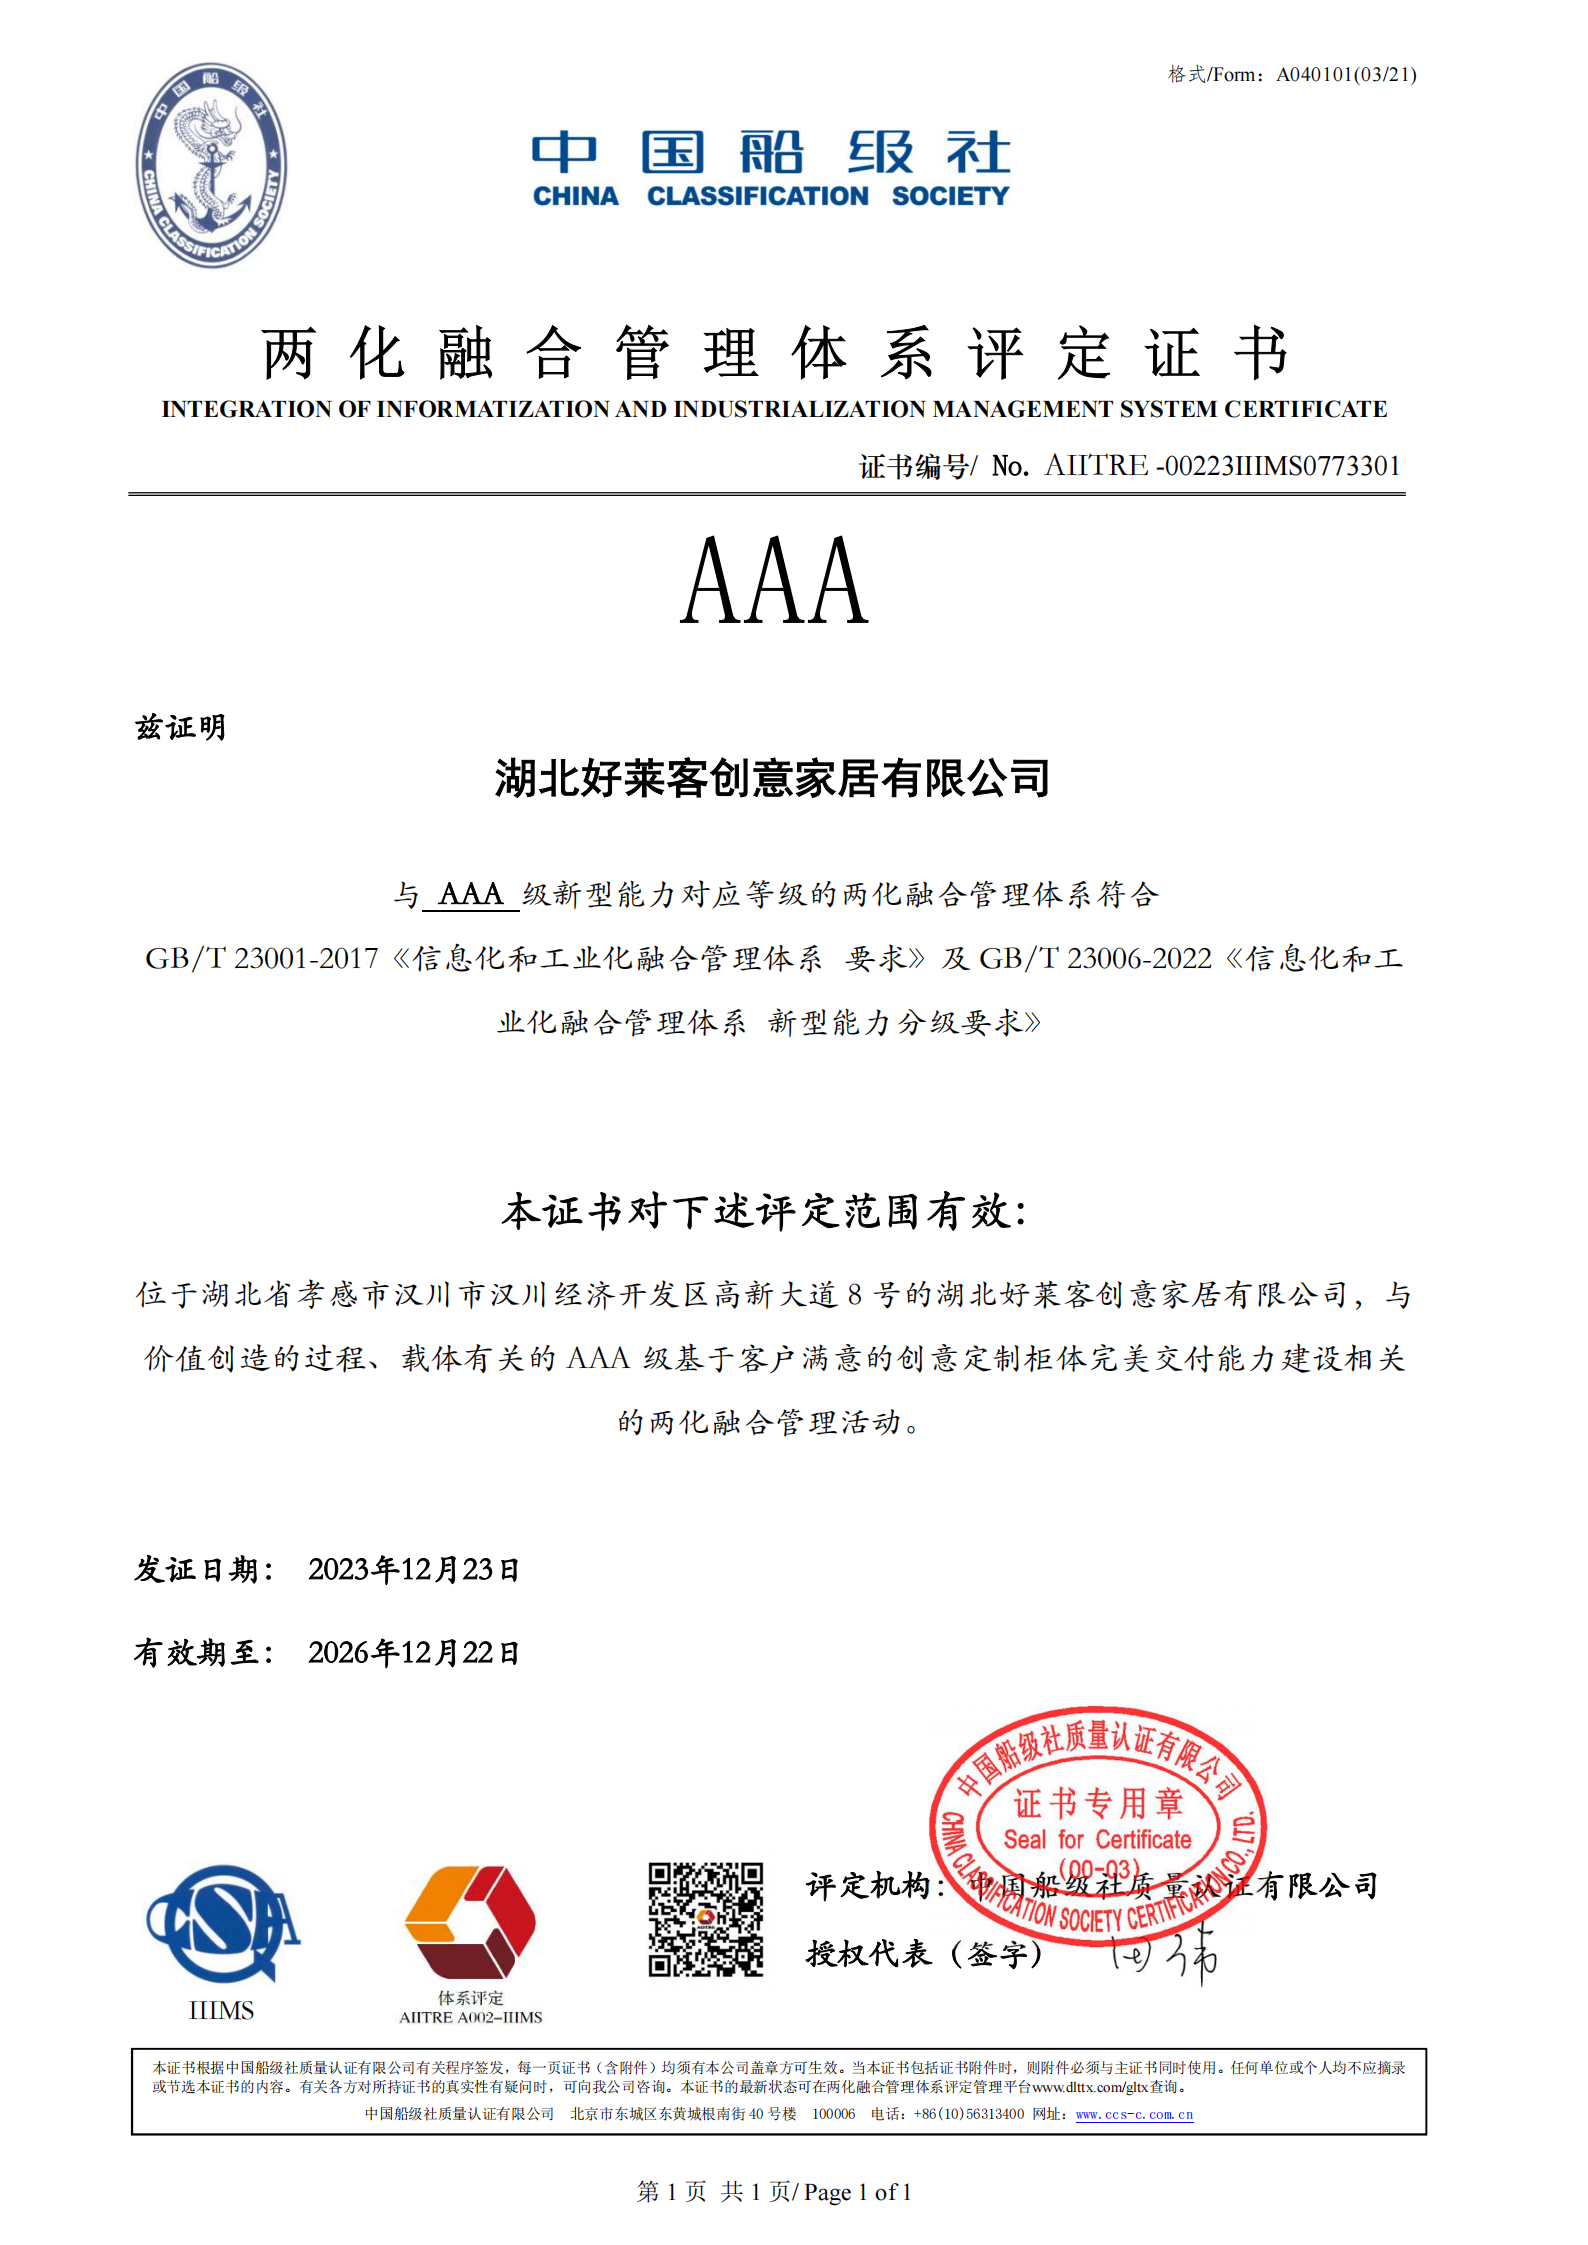 全国两化融合管理体系最高等级AAA级评定证书